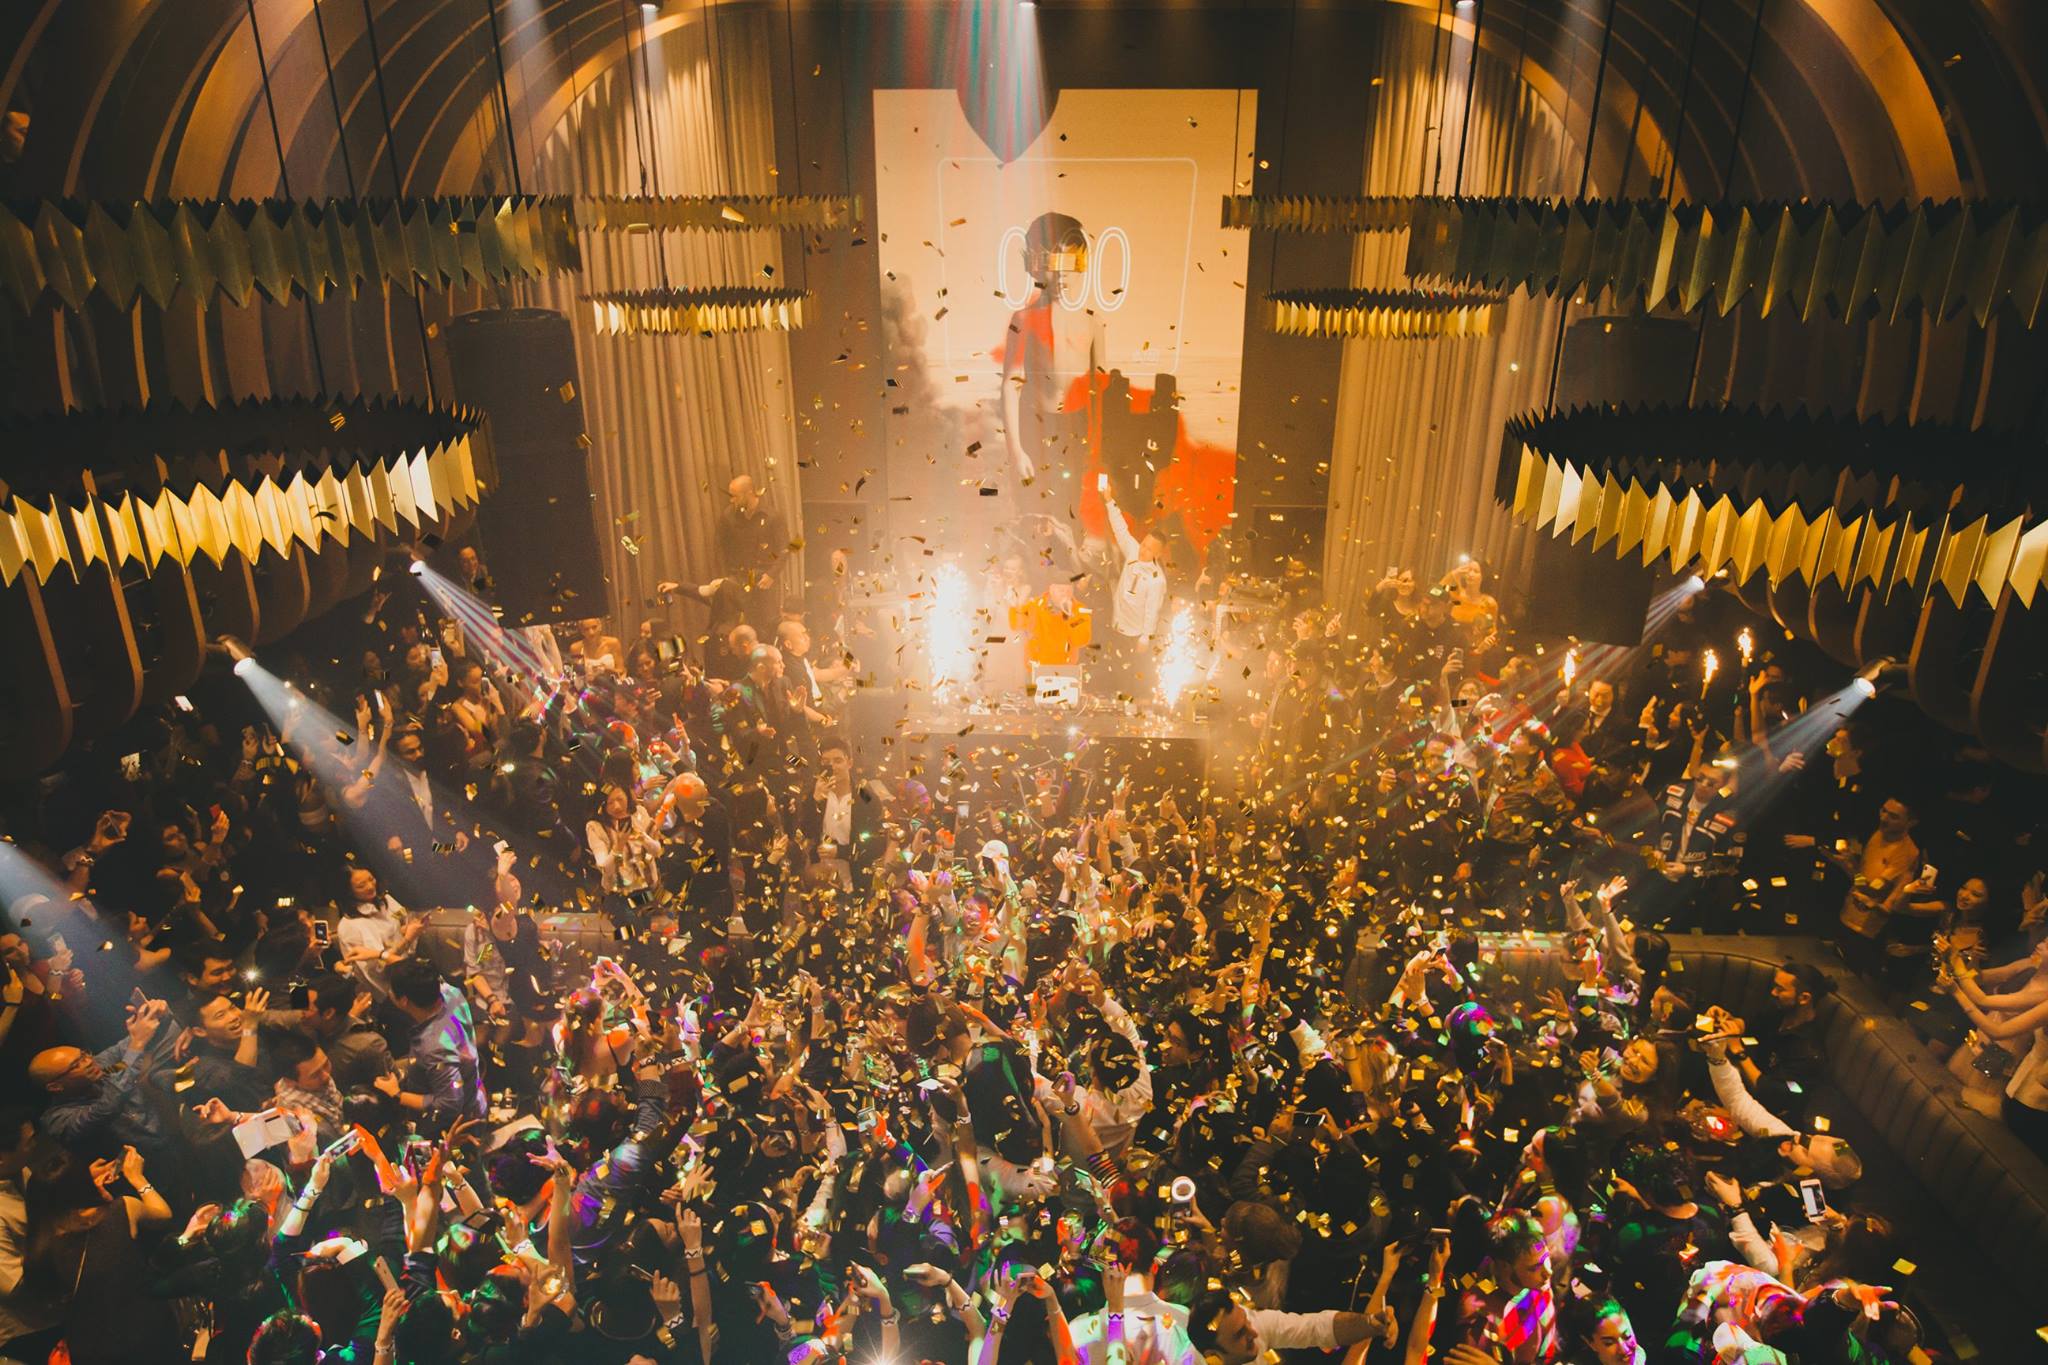 1 OAK TOKYO top 10 nightclub in japan